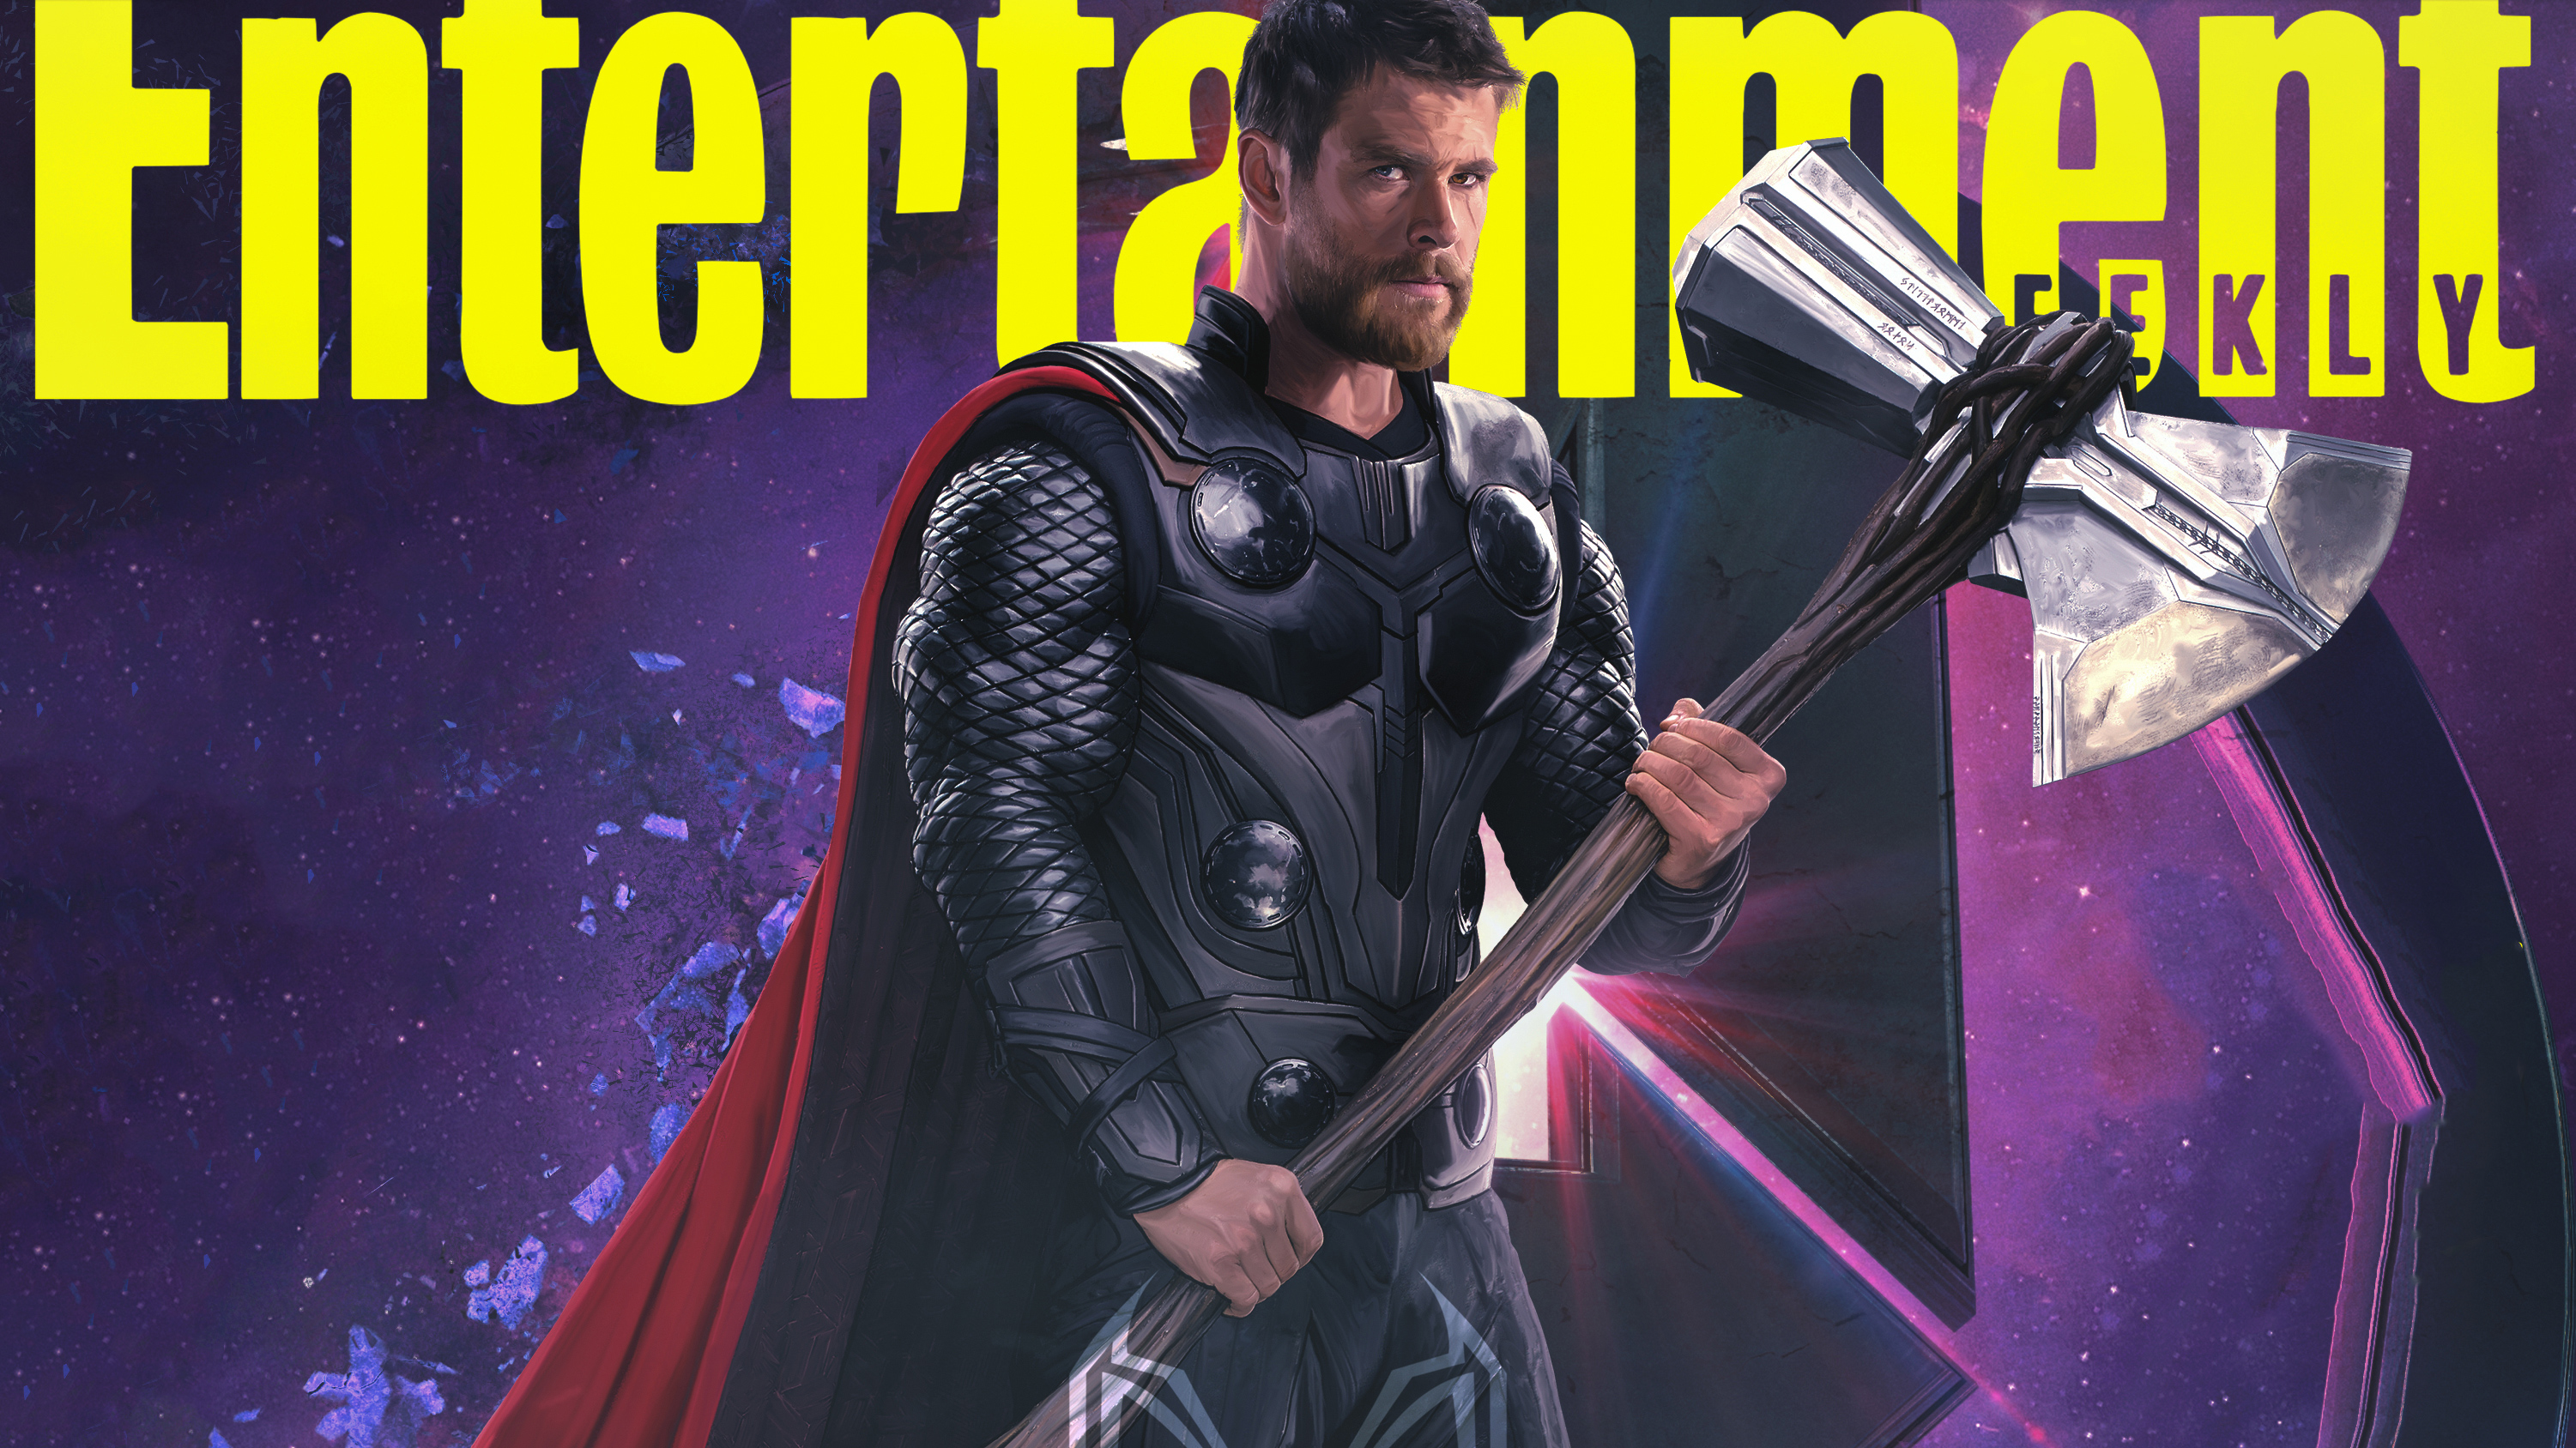 Thor Avengers Endgame Wallpapers